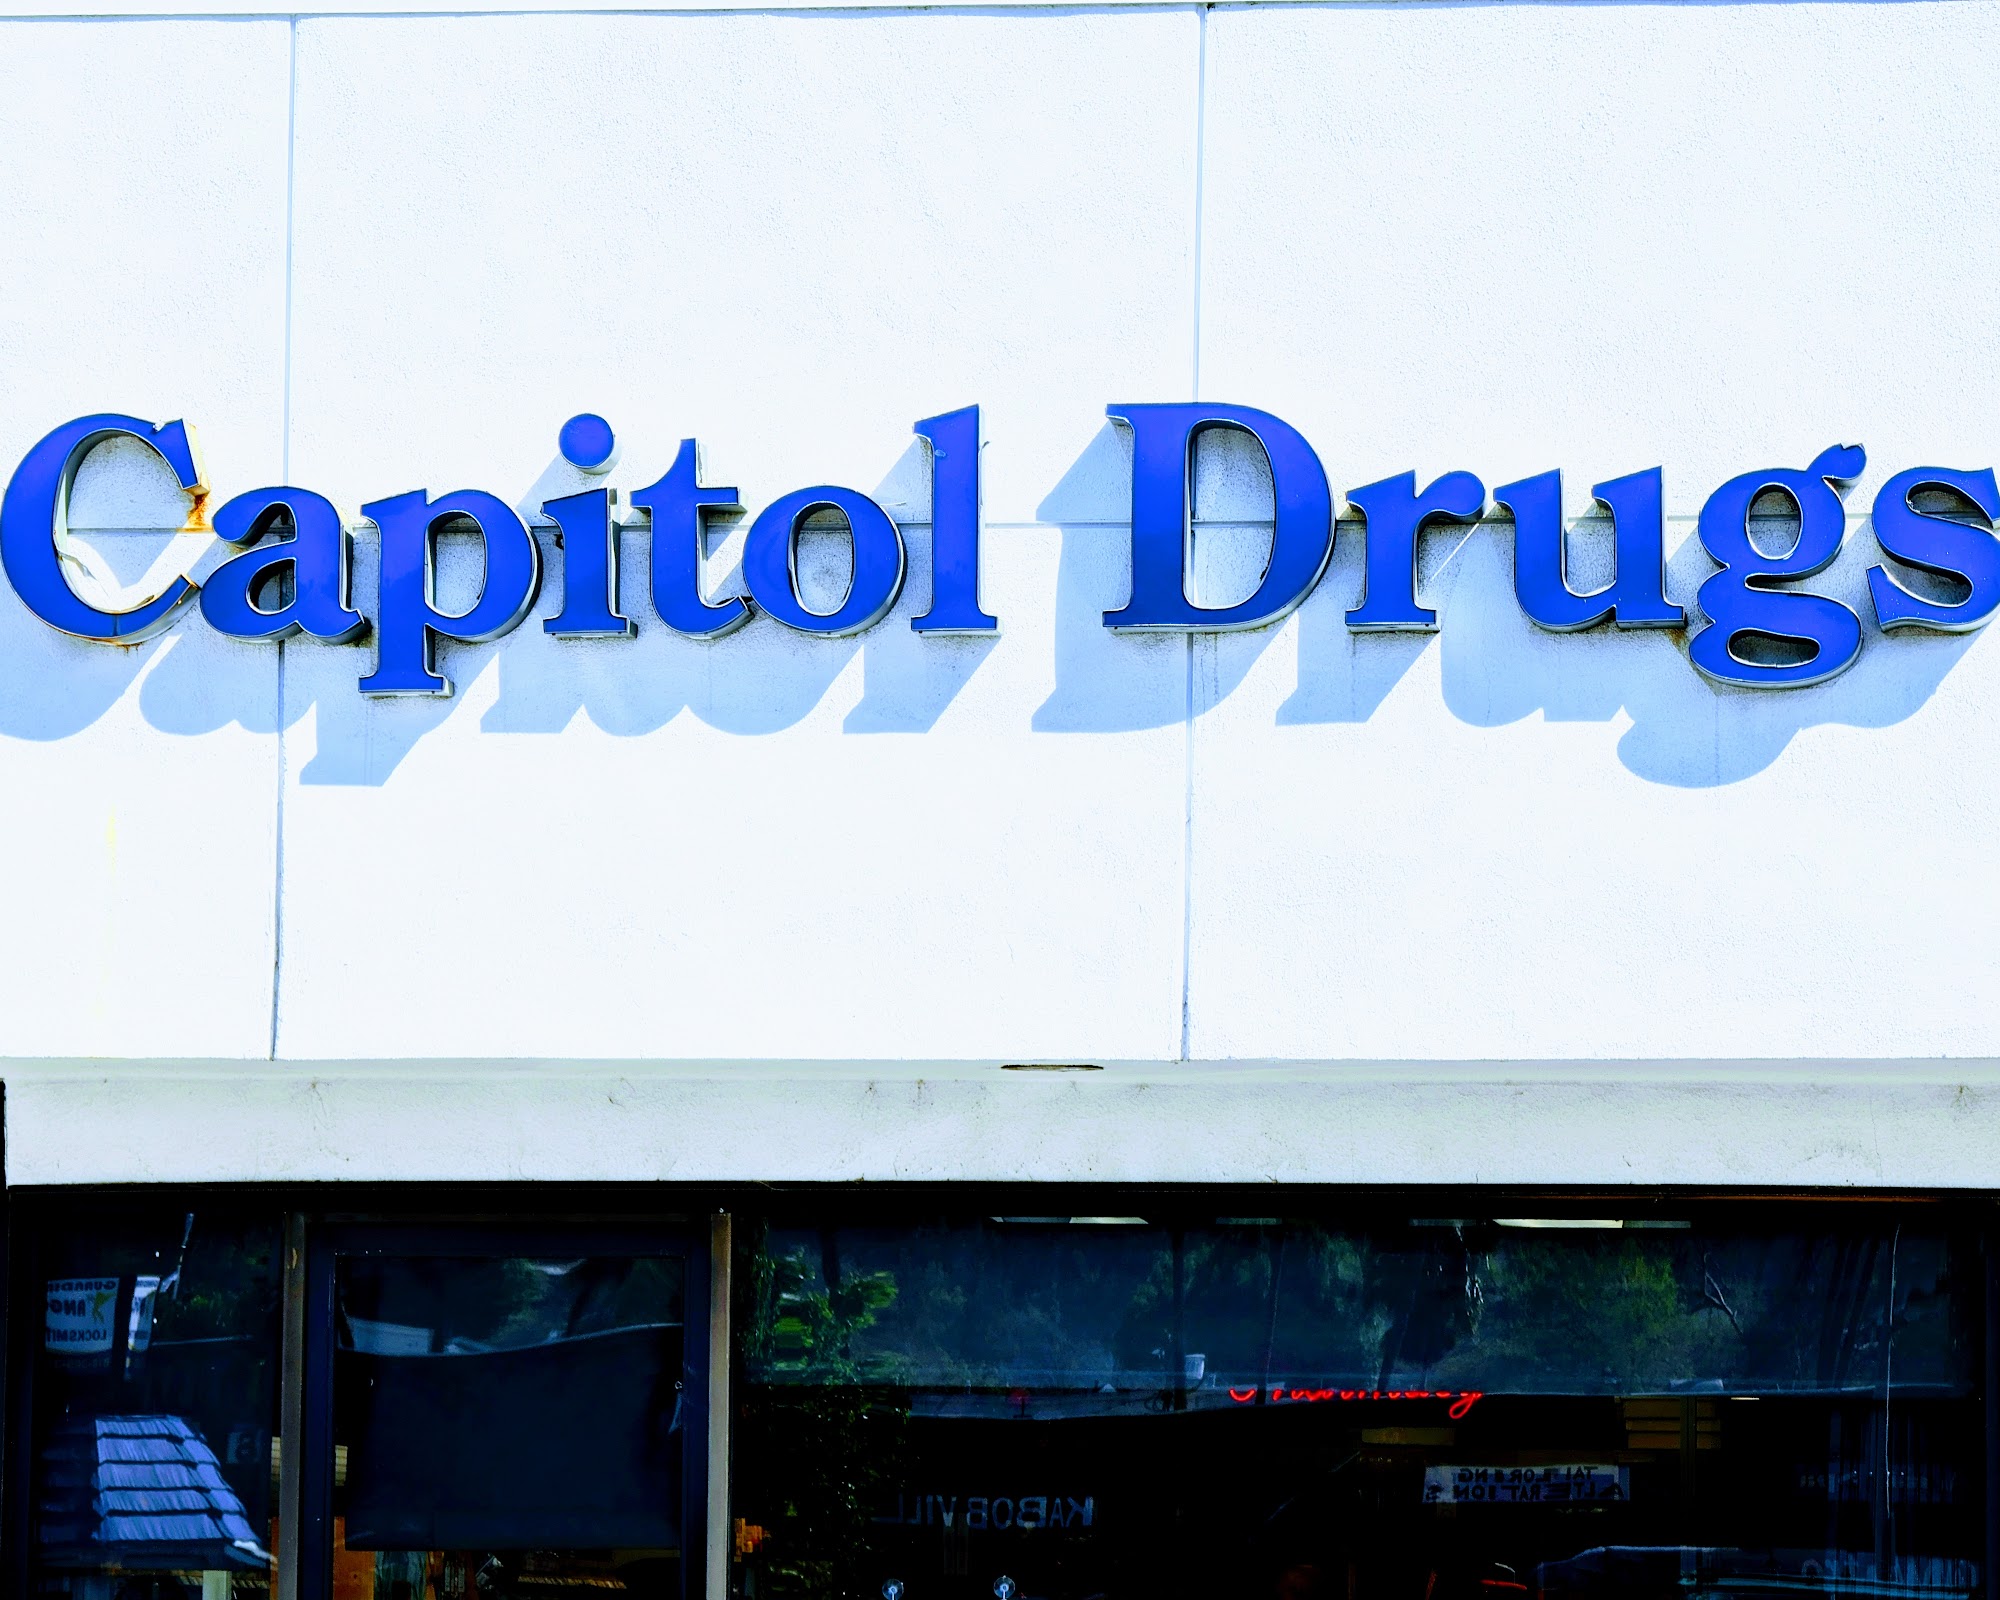 Capitol Drugs